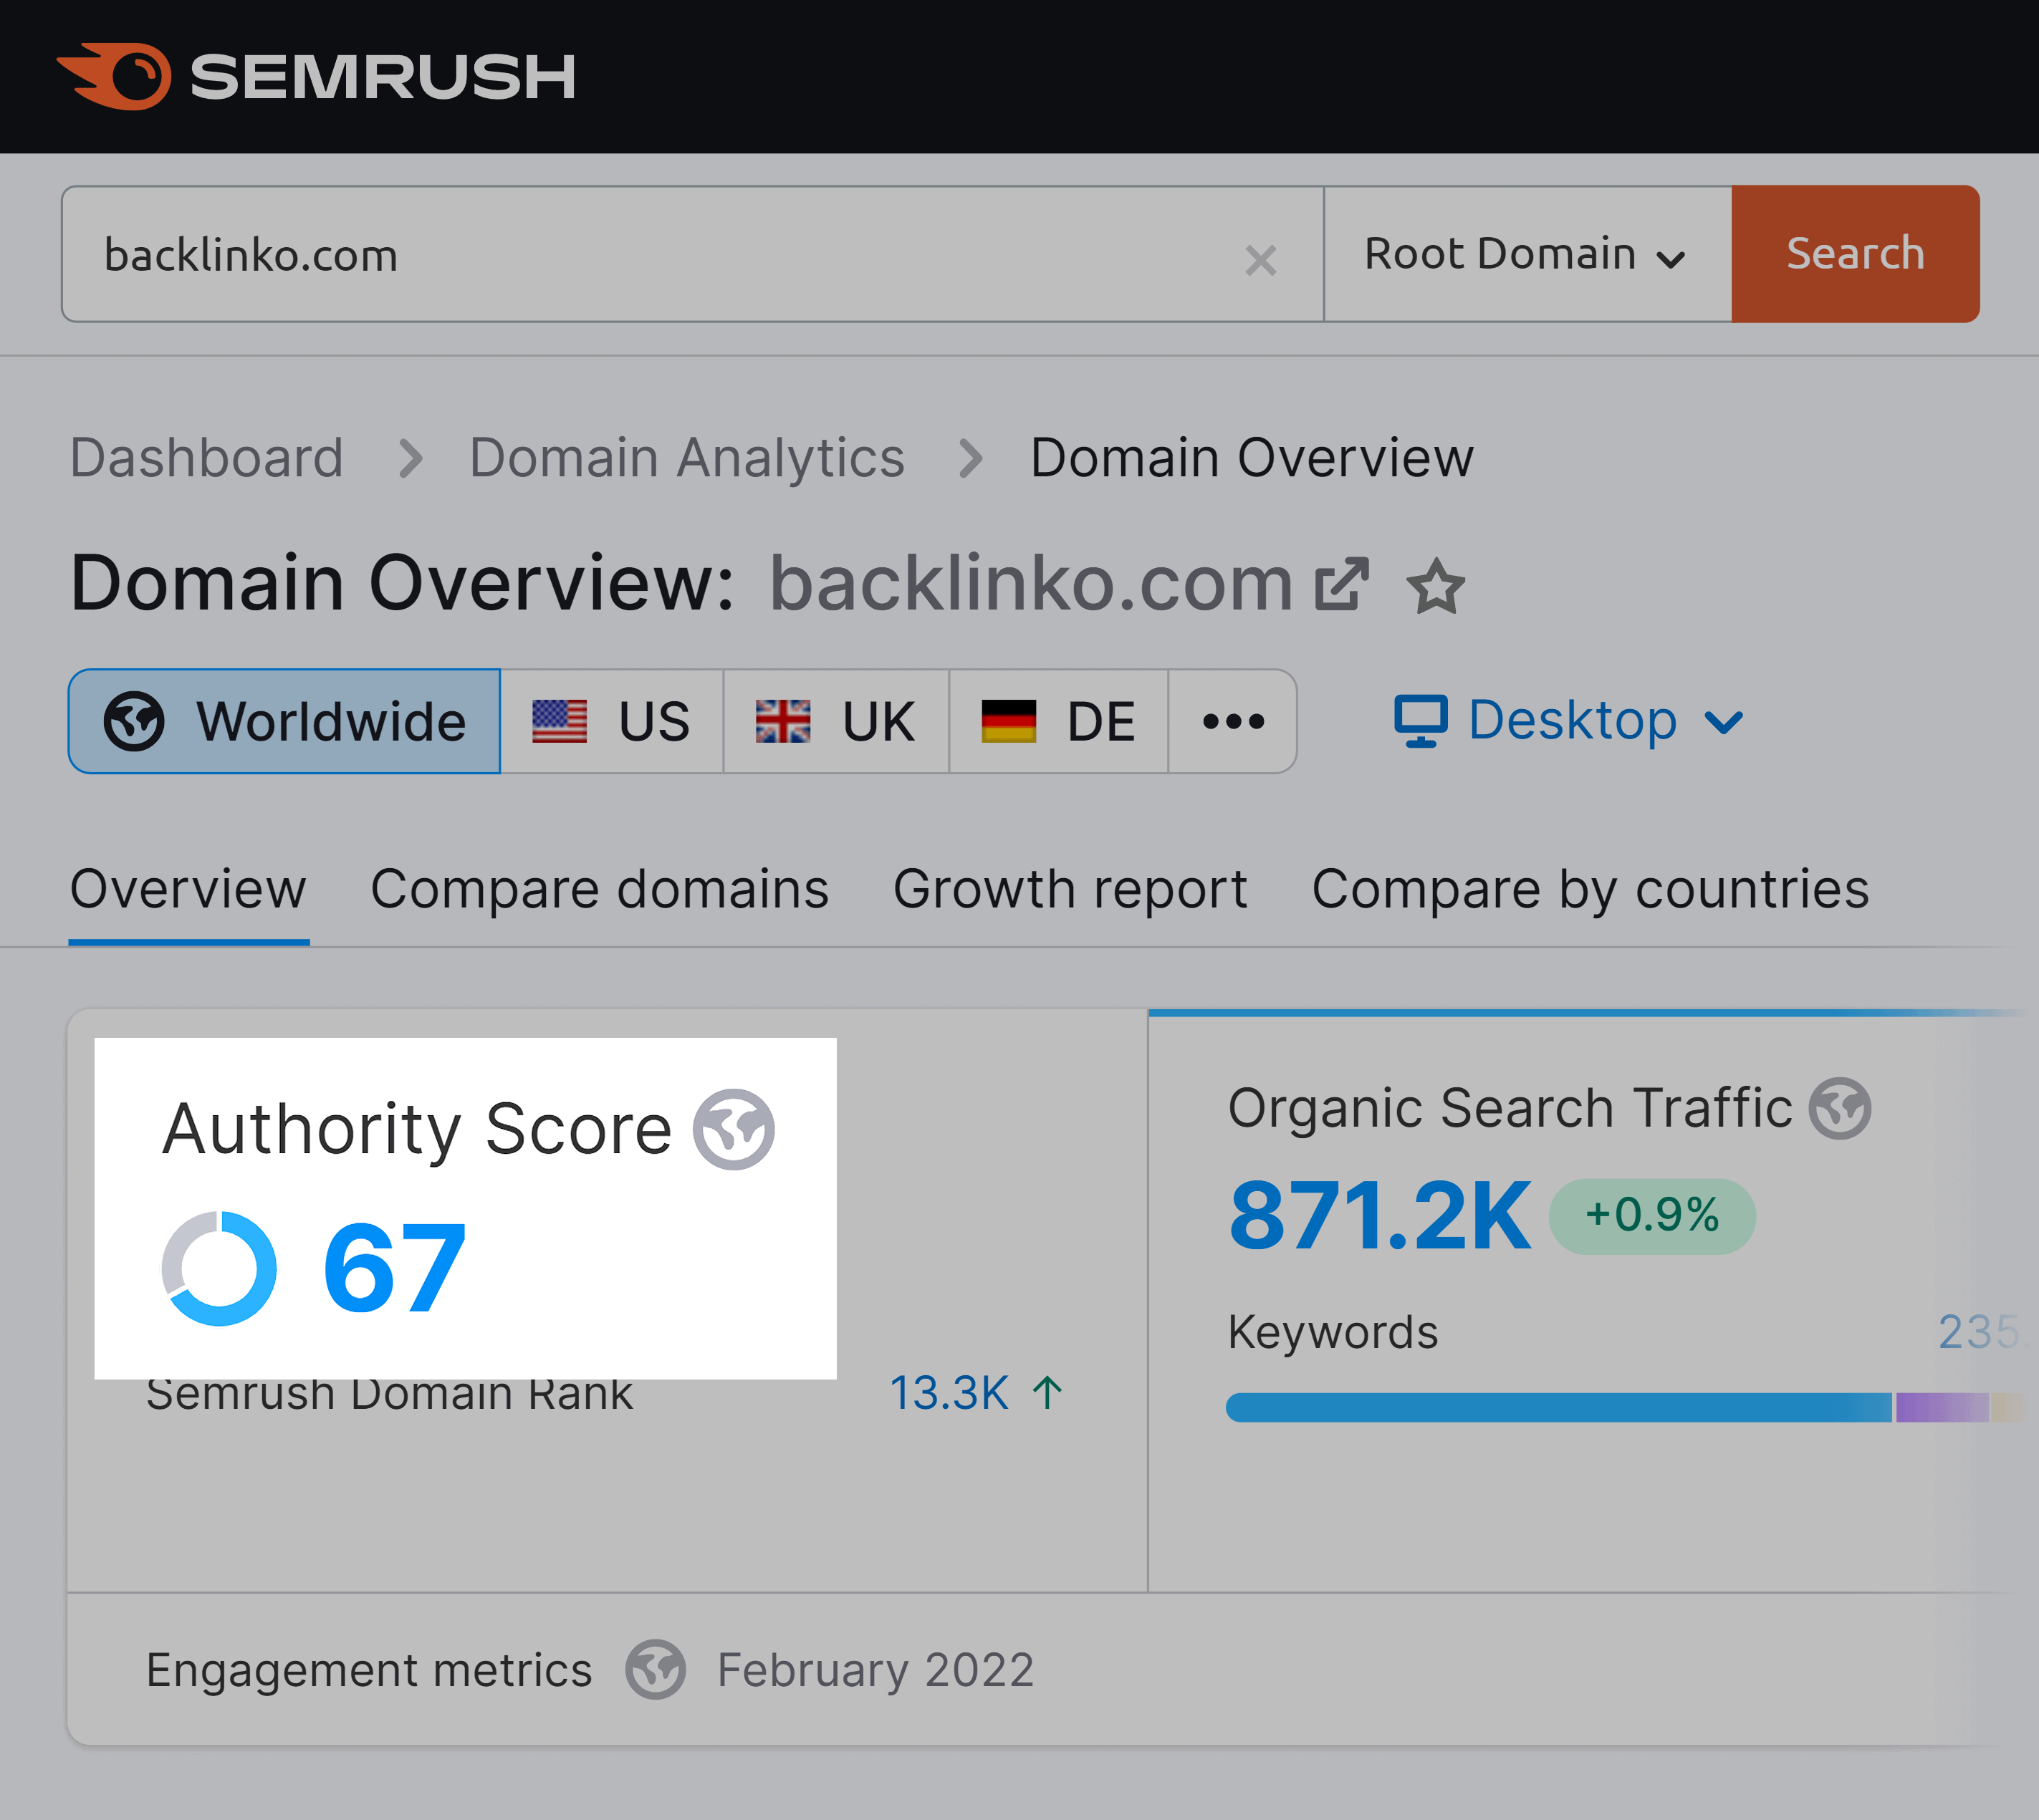 Semrush – Domain authority score